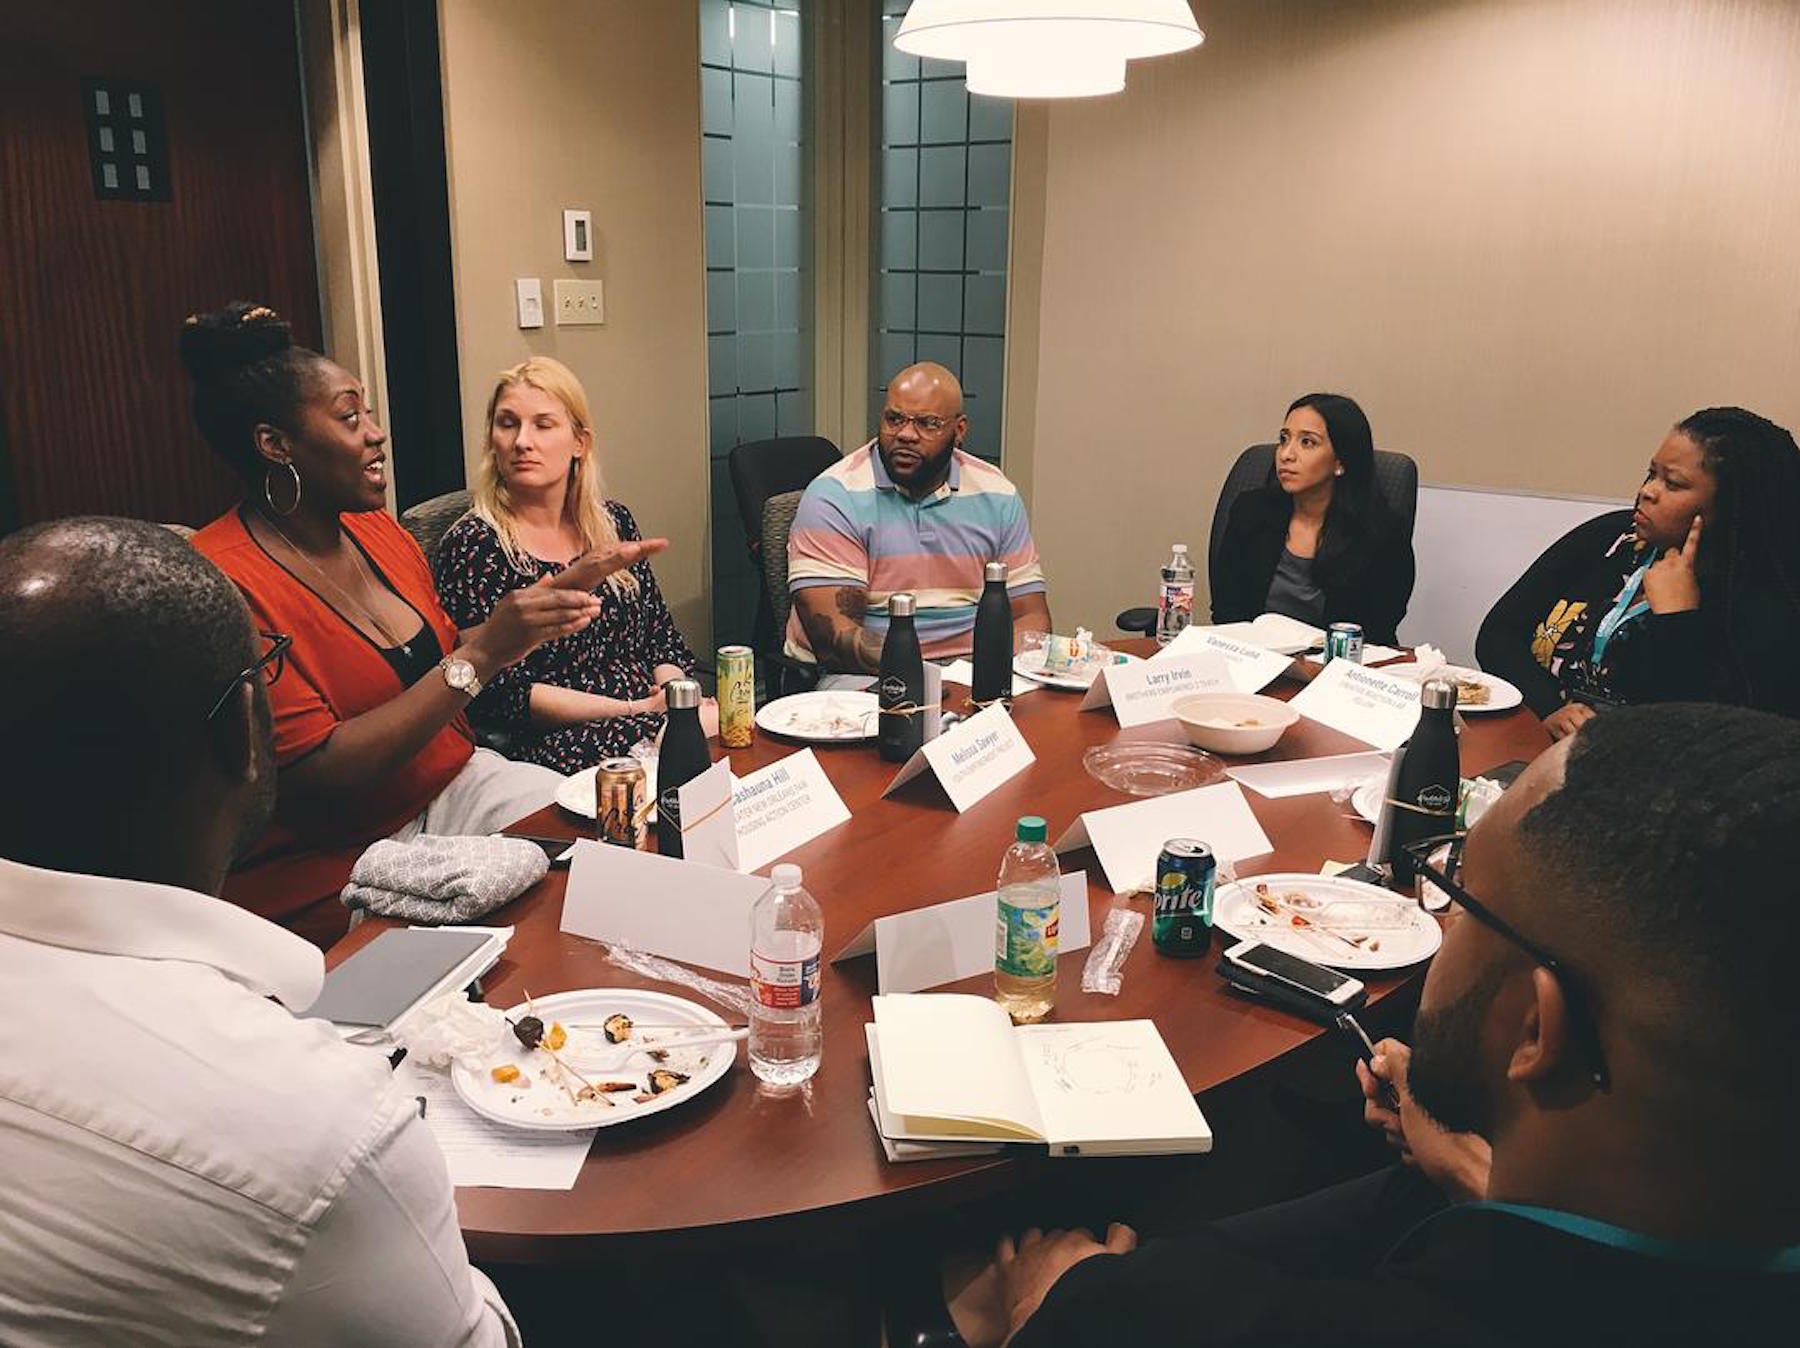 Our nonprofit roundtable discusses community engagement